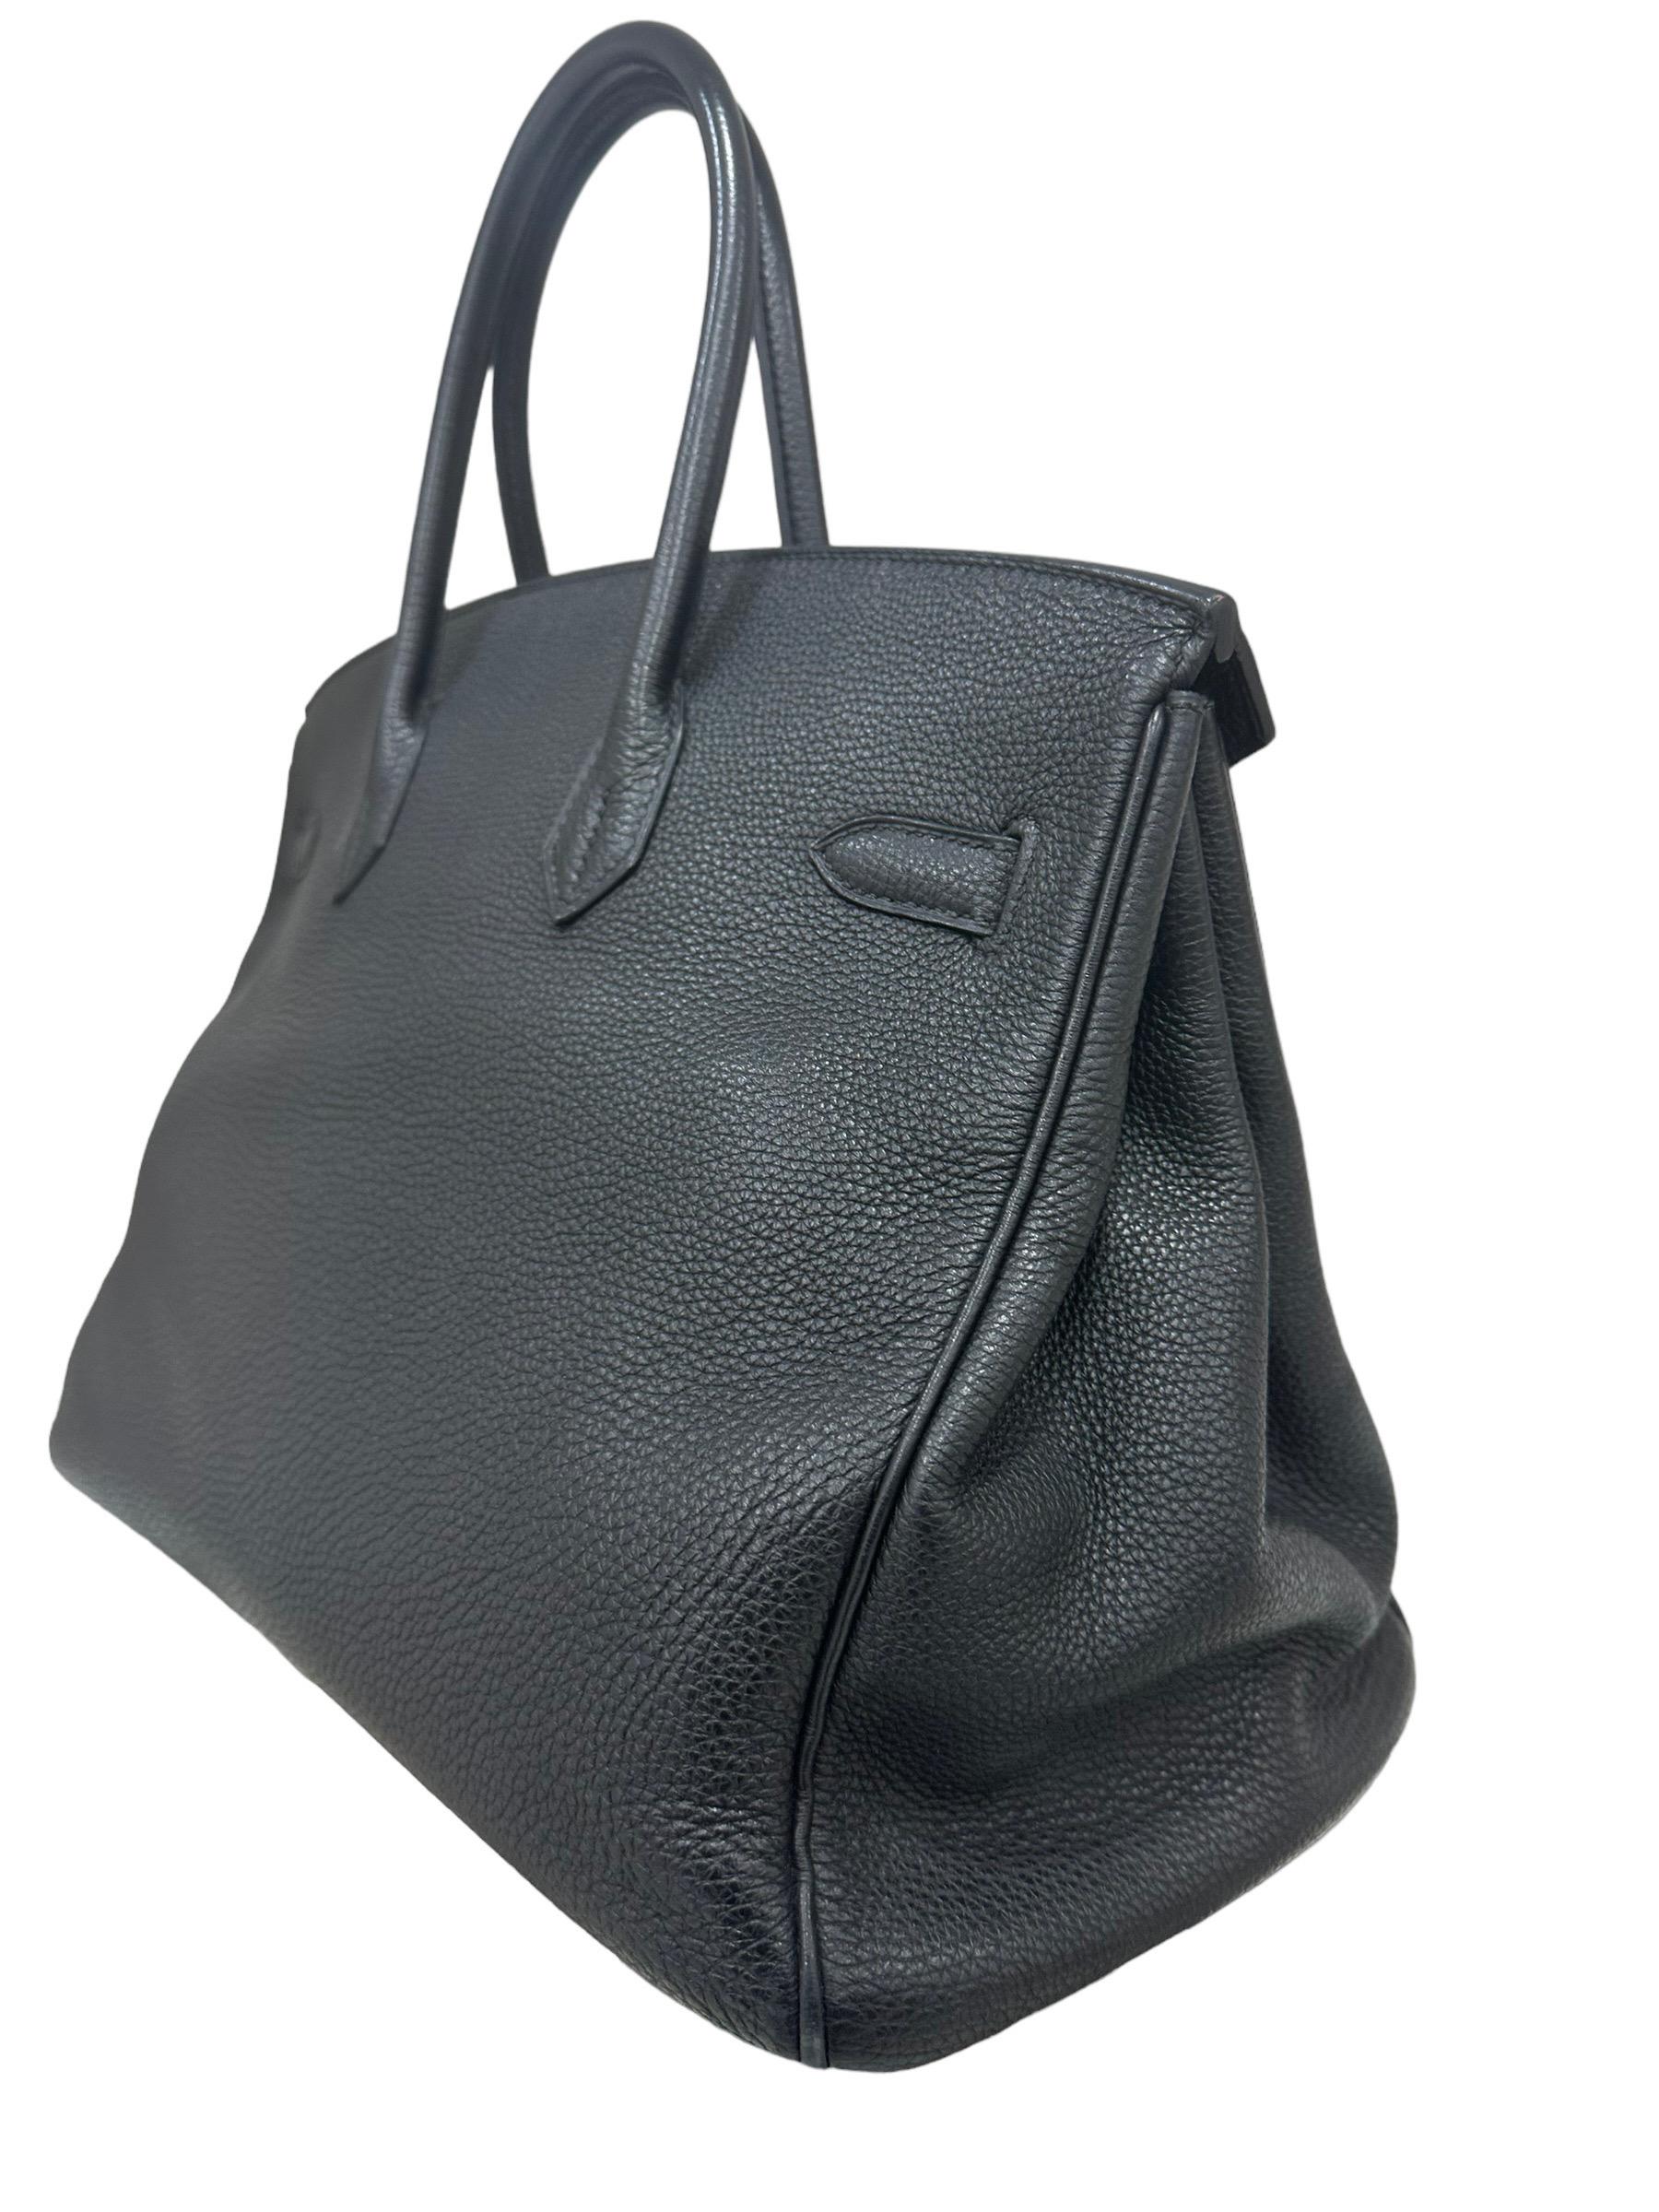 2007 Hermès Birkin Bag Togo Leather Plomb Top Handle Bag For Sale 5